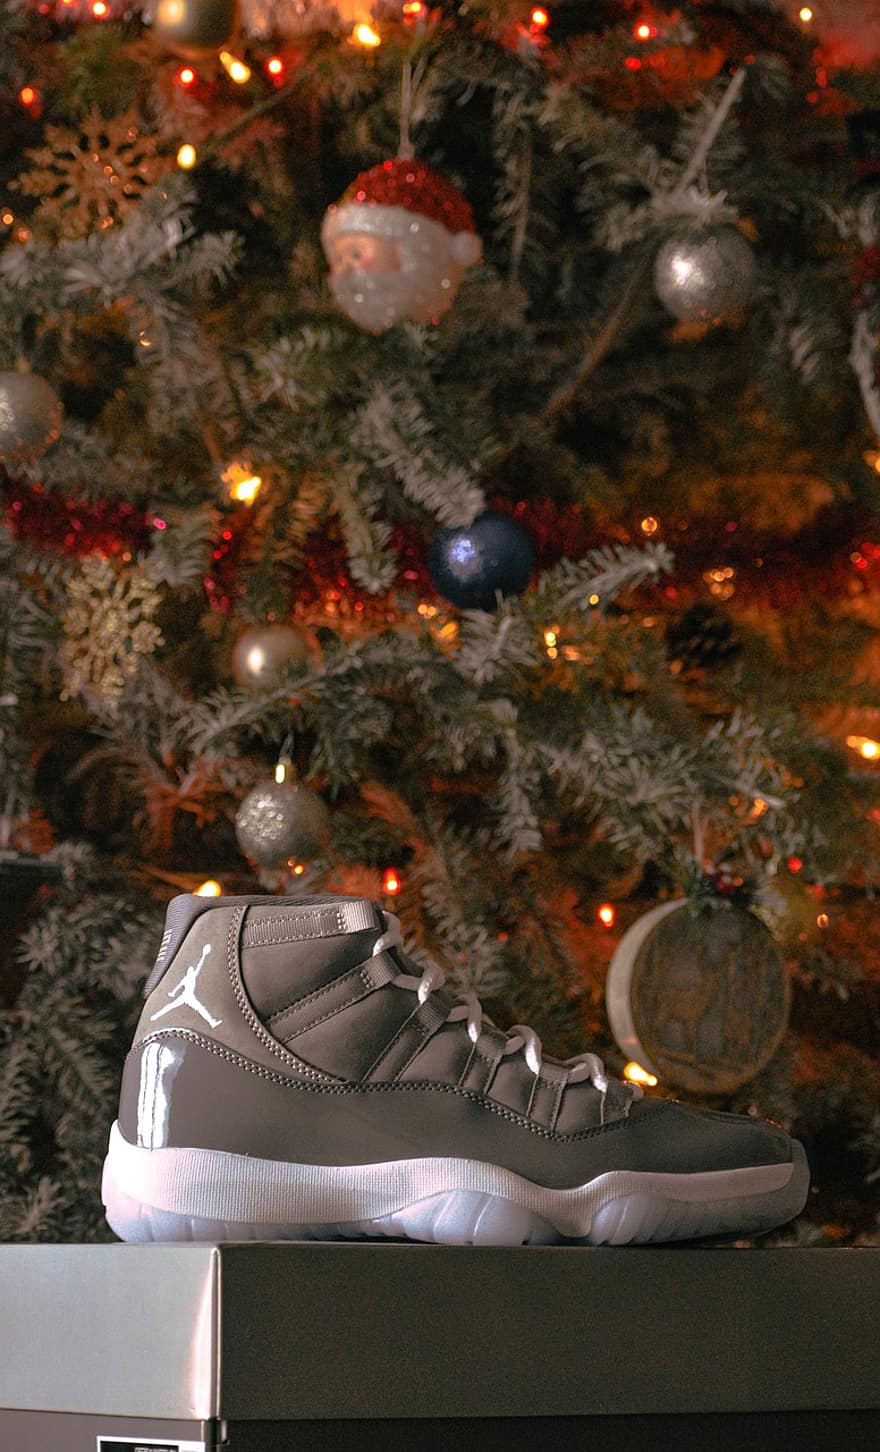 Zapatos, Navidad, Moda, papel pintado, bloquear pantalla, Jordan